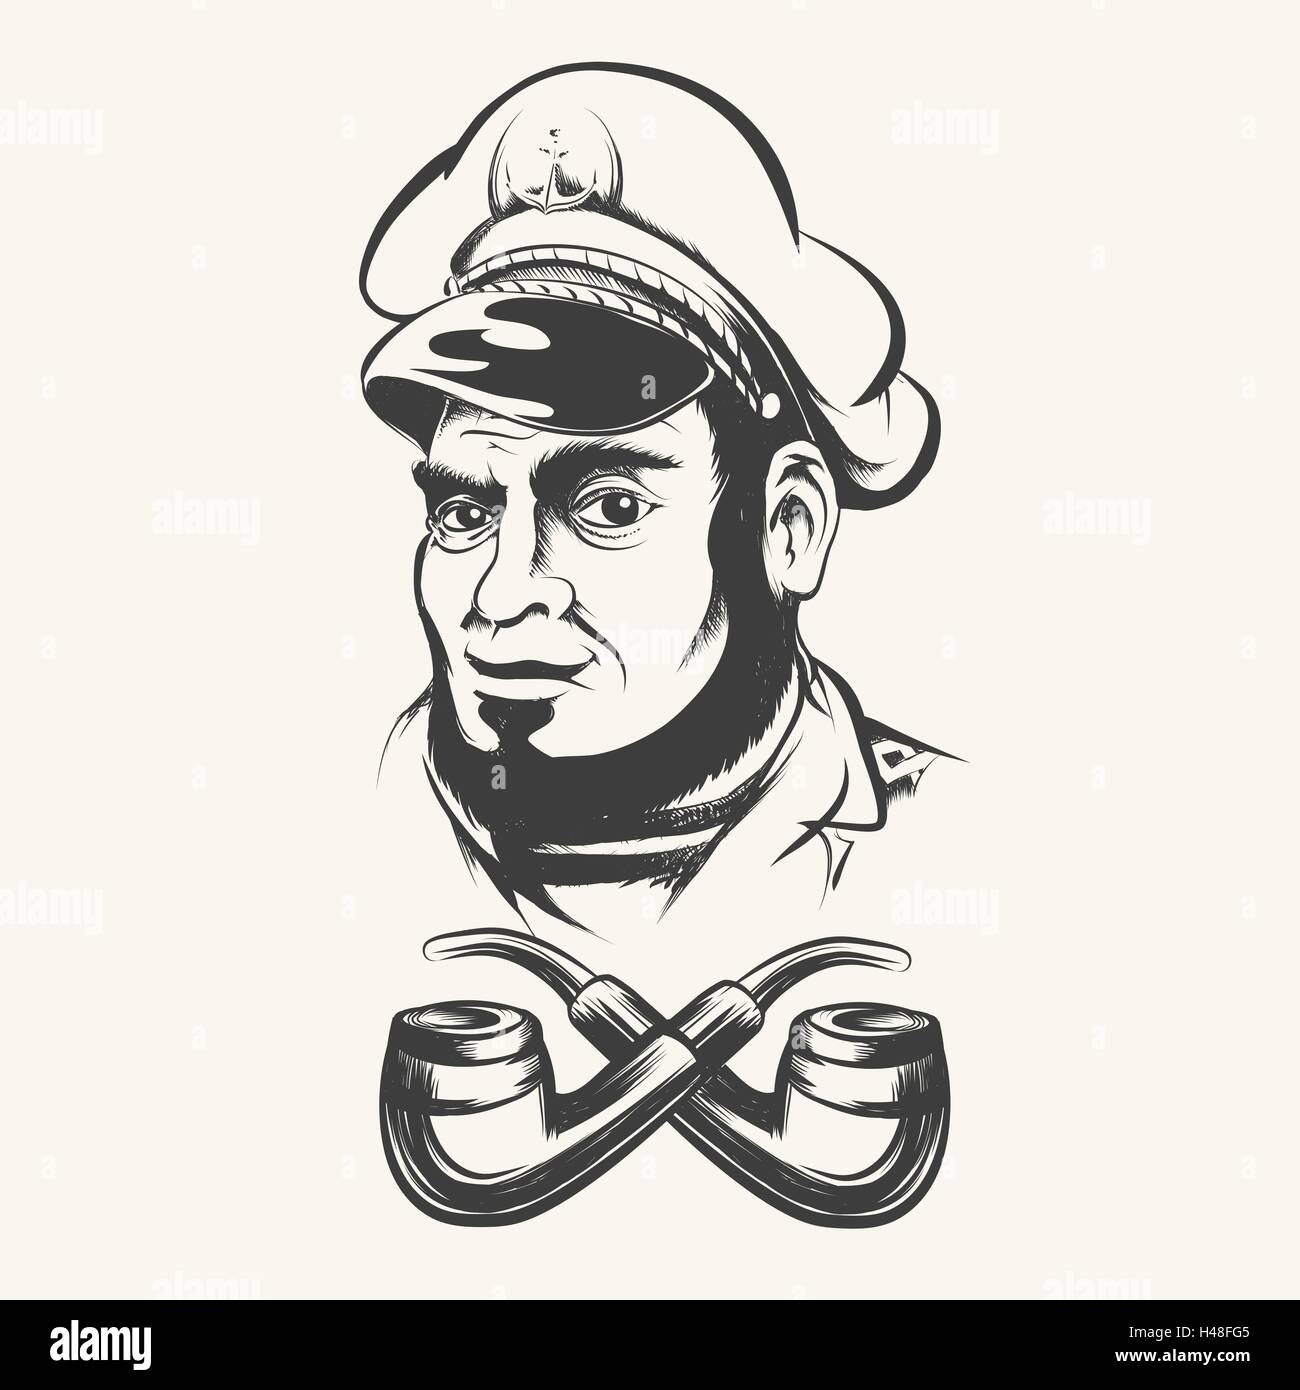 Capitán de Mar, capitán, patrón, Mariner vistiendo hat cap y dos tubos de humo. Ilustración de estilo retro. Ilustración del Vector